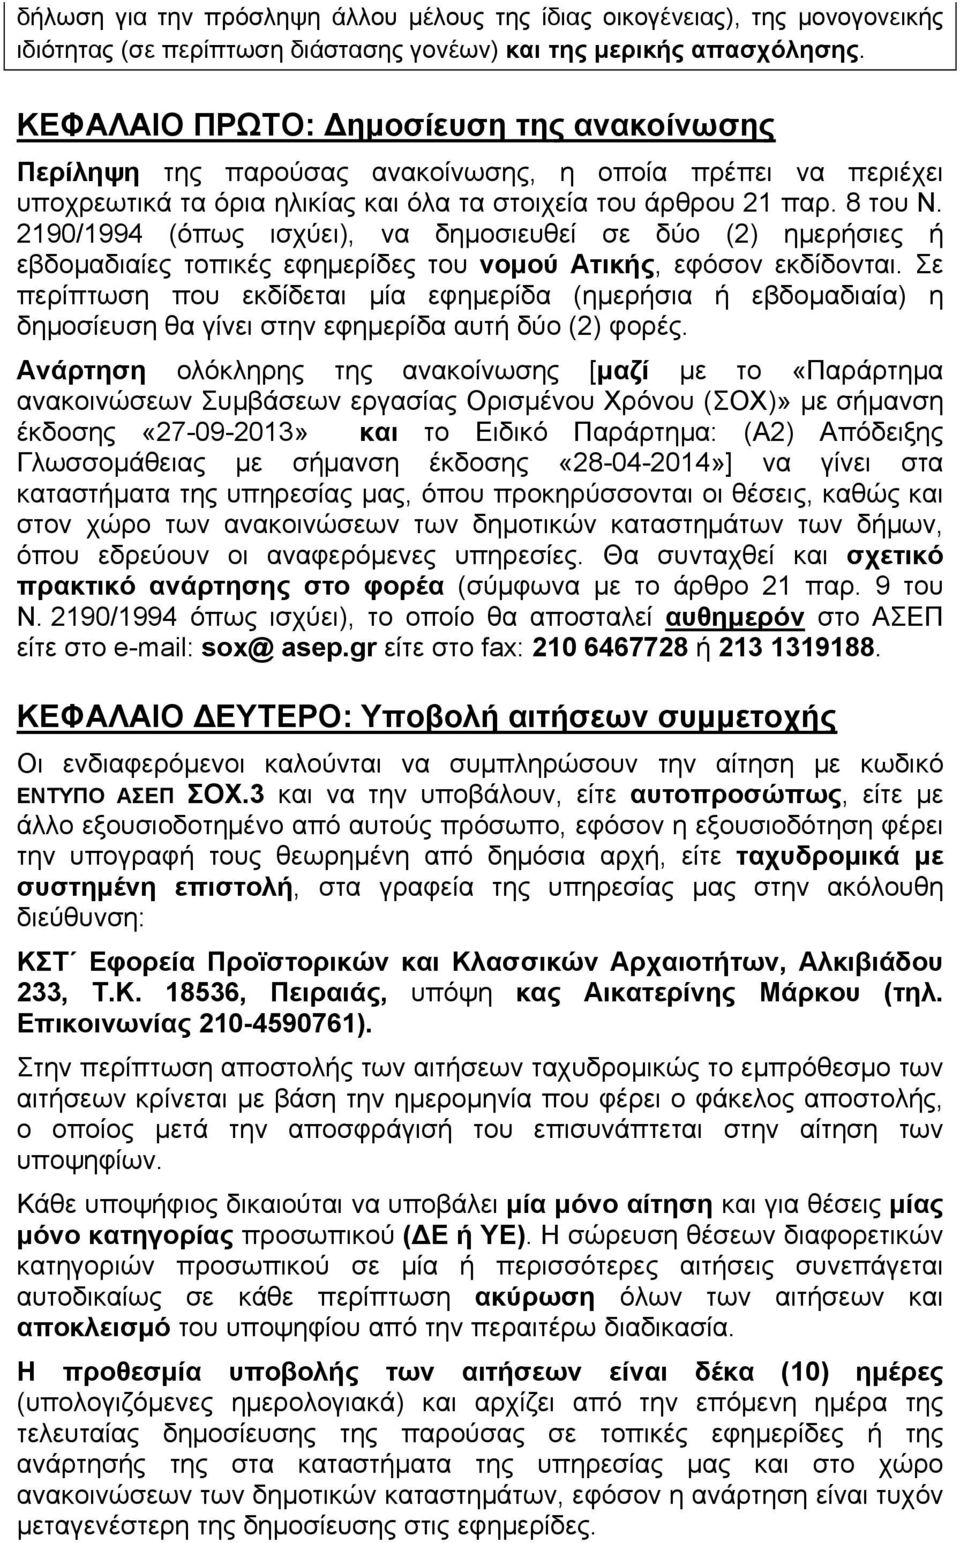 2190/1994 (όπως ισχύει), να δημοσιευθεί σε δύο (2) ημερήσιες ή εβδομαδιαίες τοπικές εφημερίδες του νομού Ατικής, εφόσον εκδίδονται.